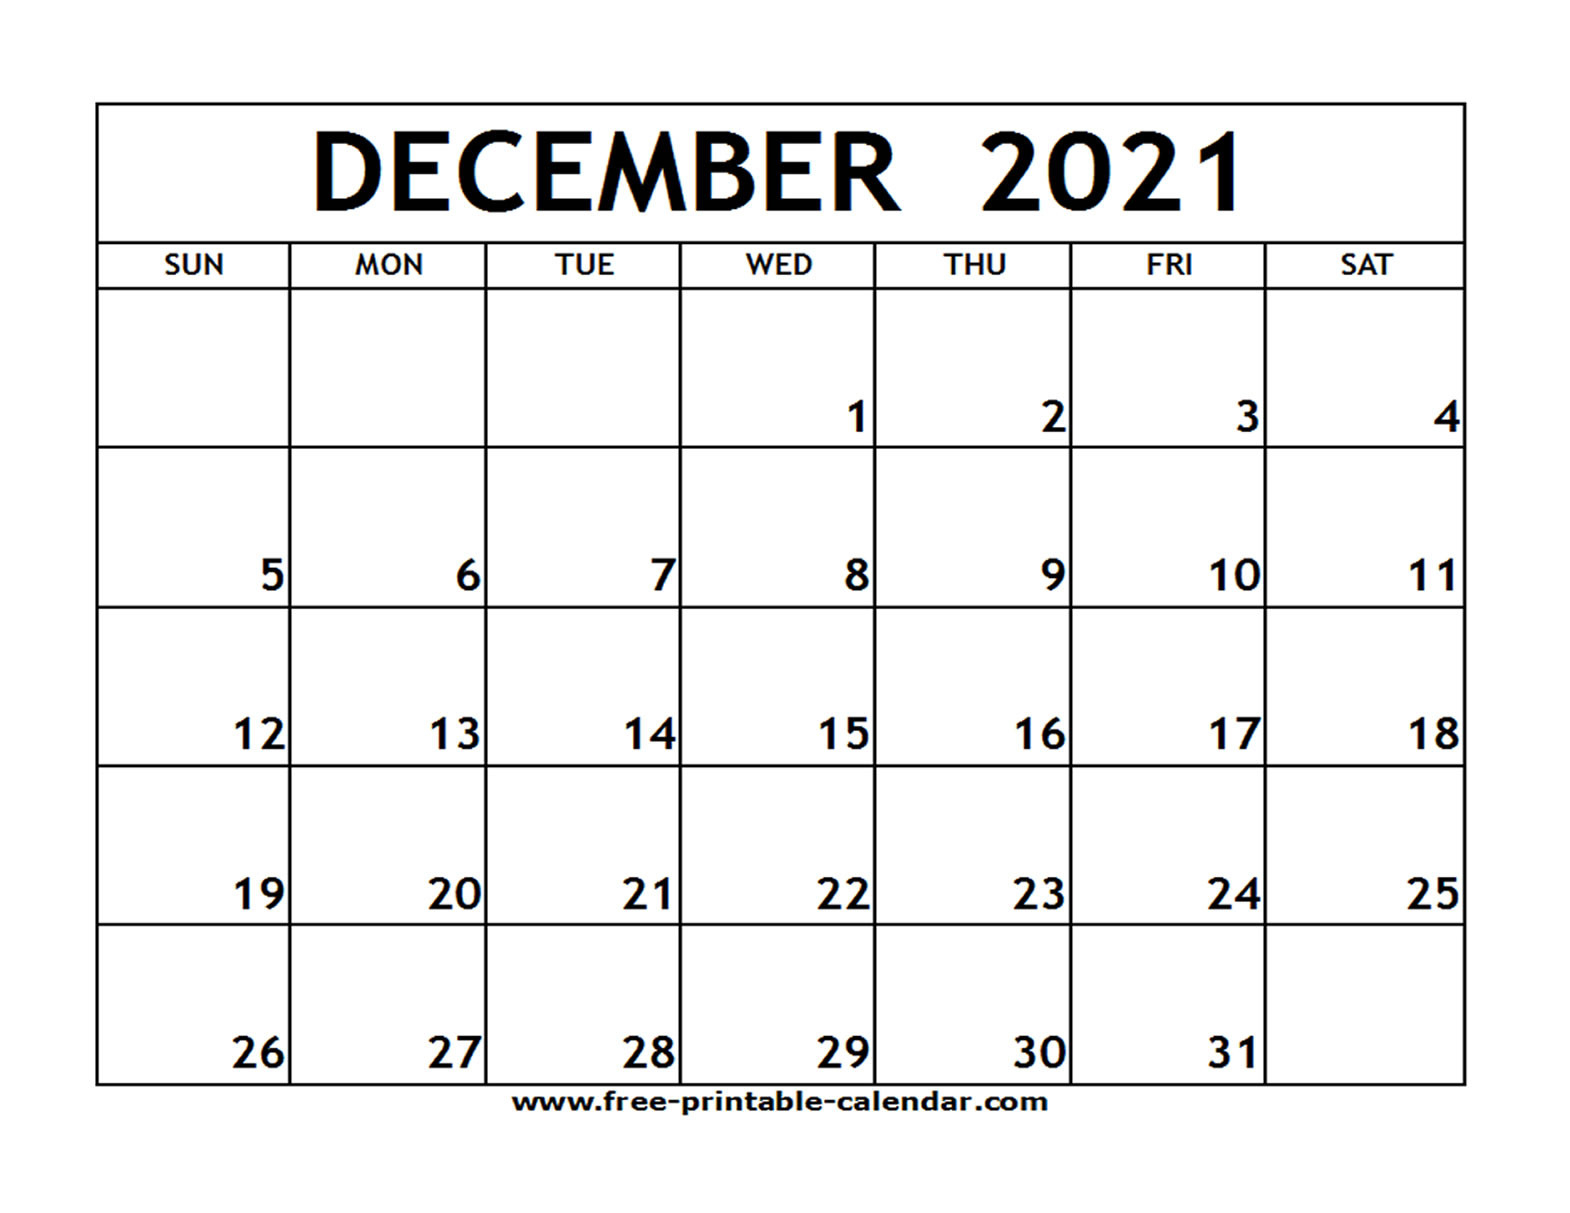 Dec 2021 Printable Calendar | Free Printable Calendar-Absentee Calendar 2021